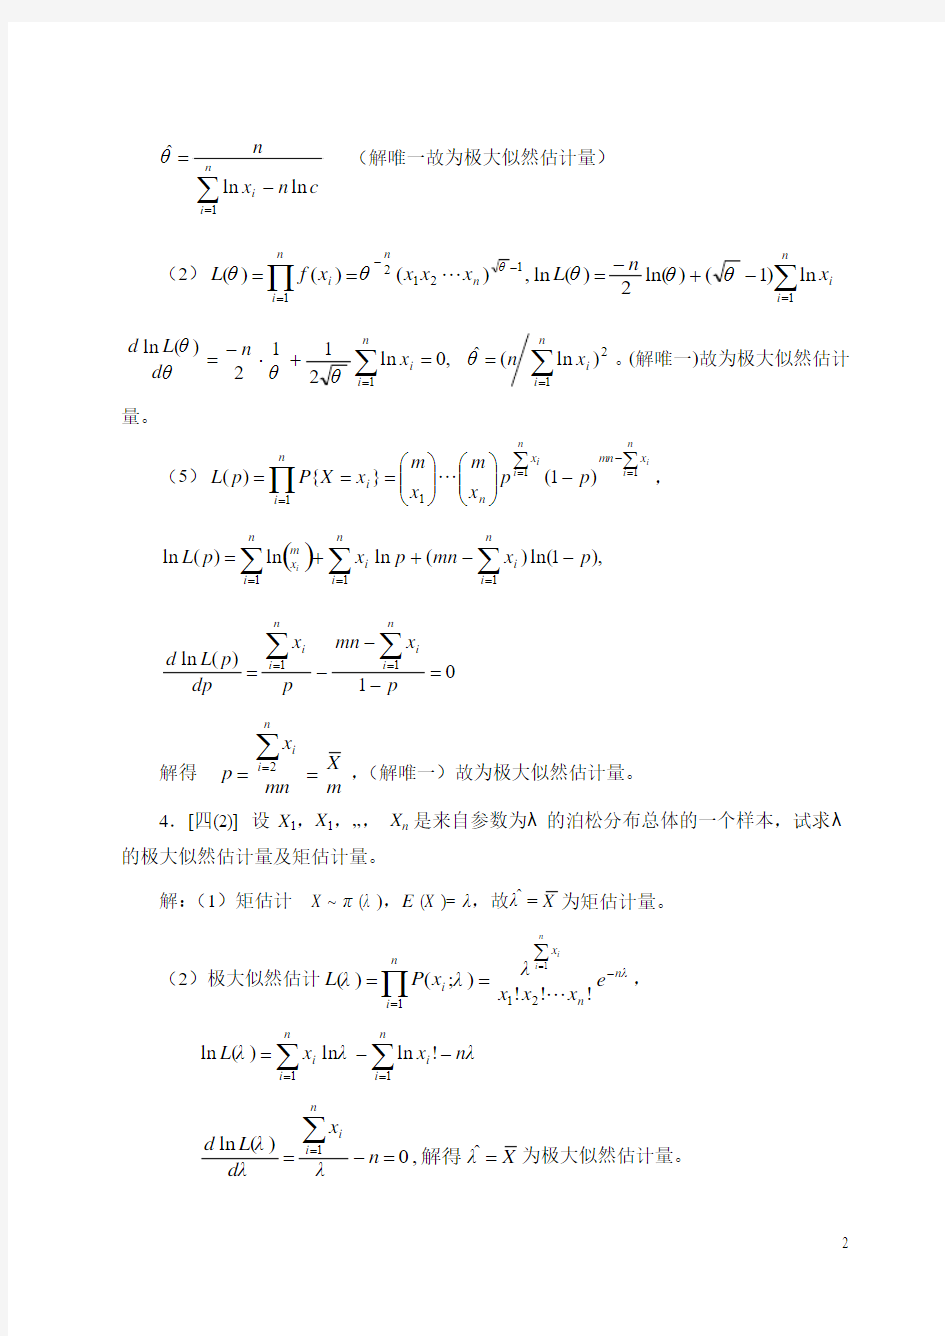 概率论与数理统计第四版-课后习题答案_盛骤__浙江大学第七八章